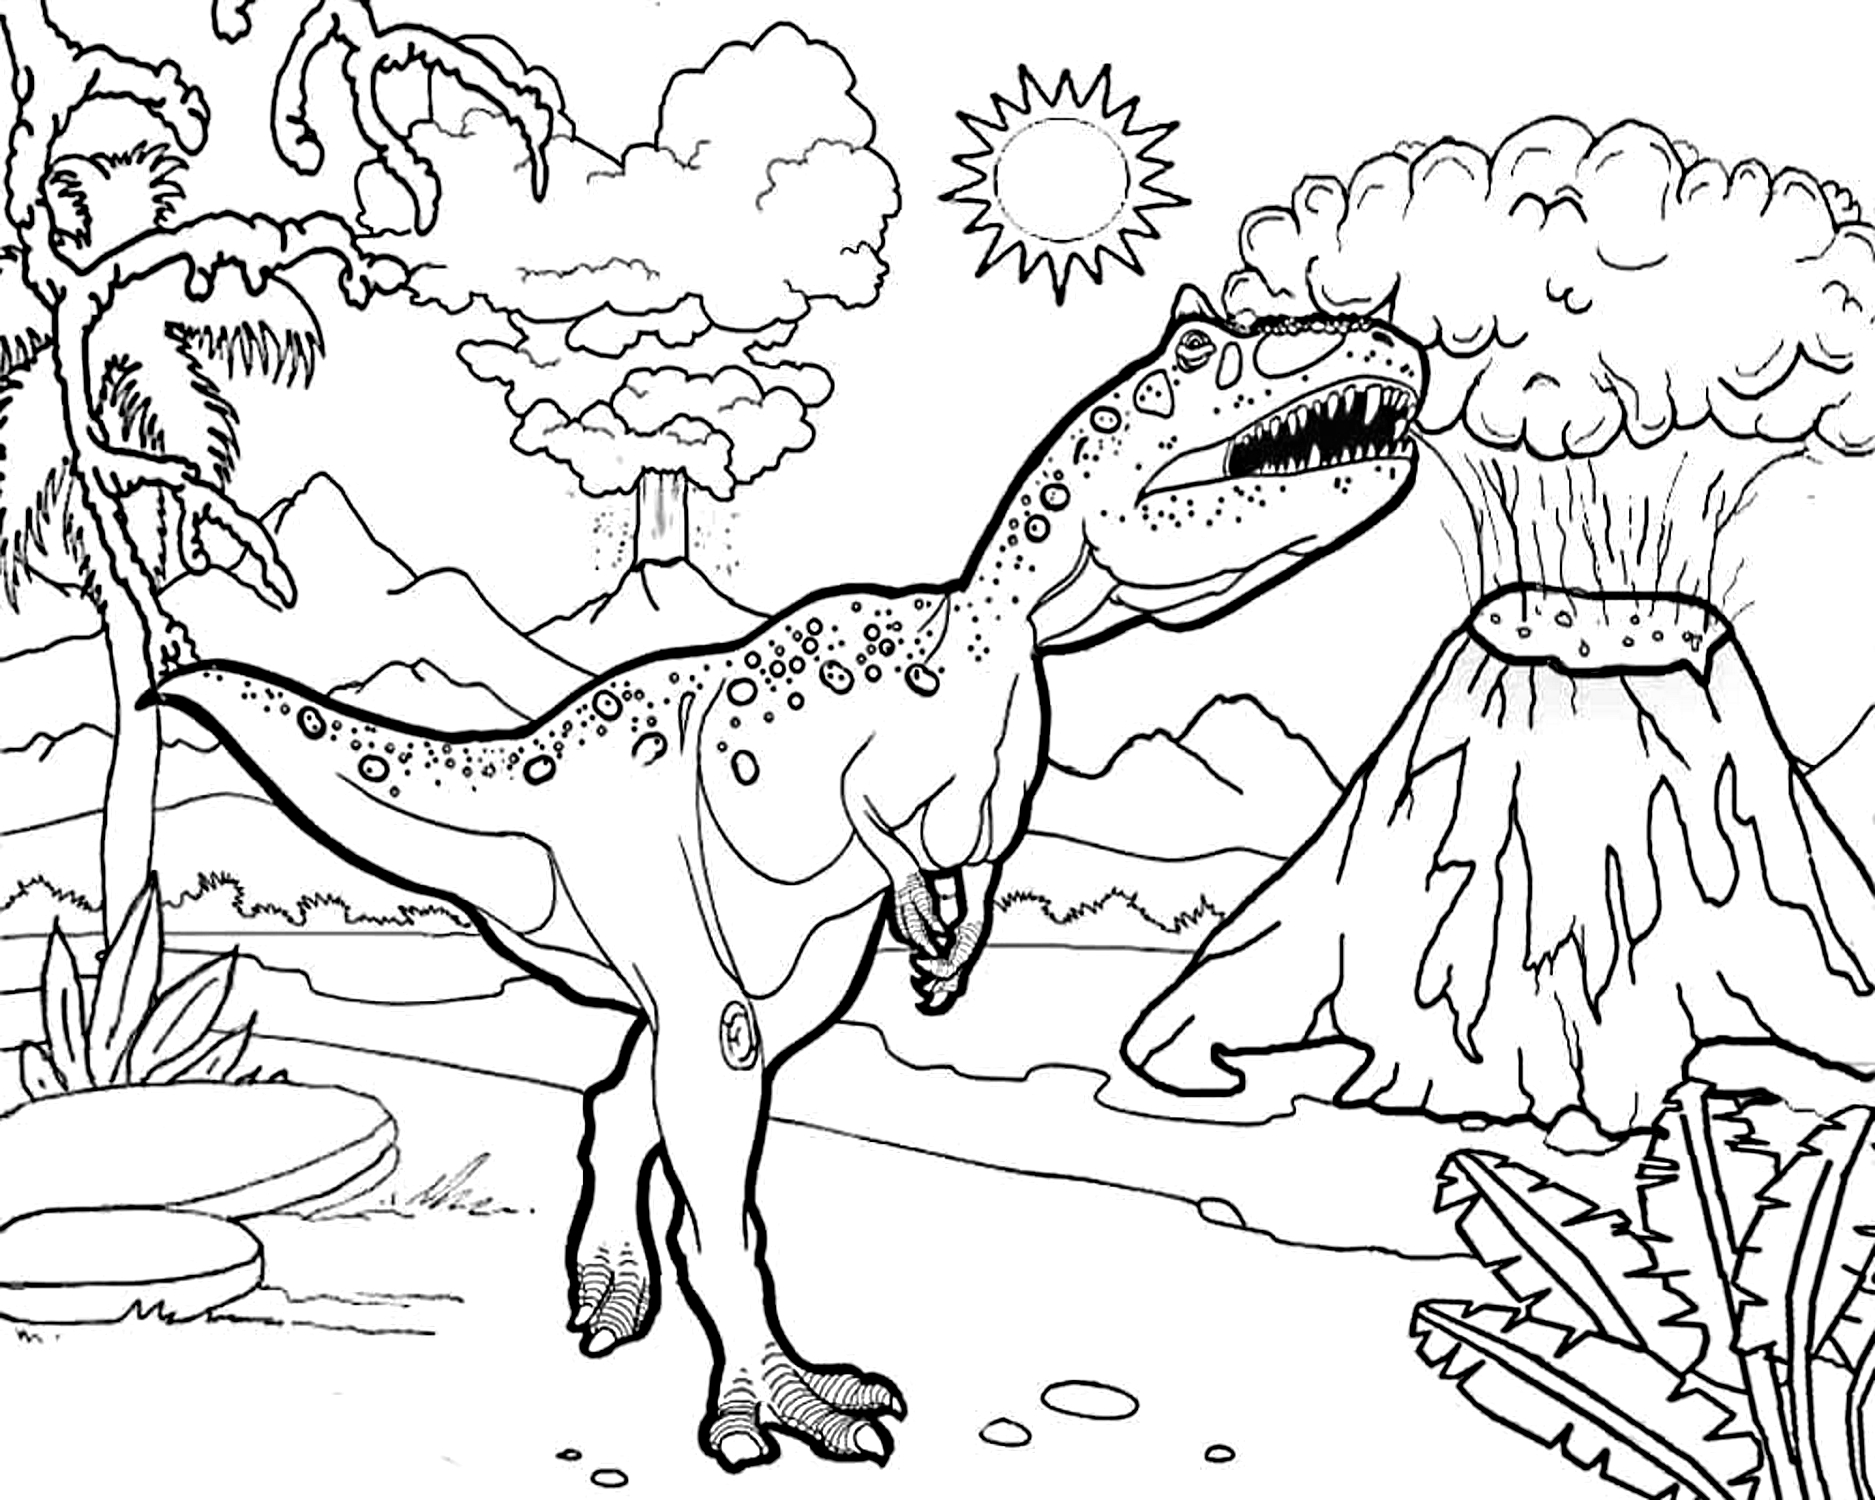 Dibujo 49 de Jurassic World para imprimir y colorear